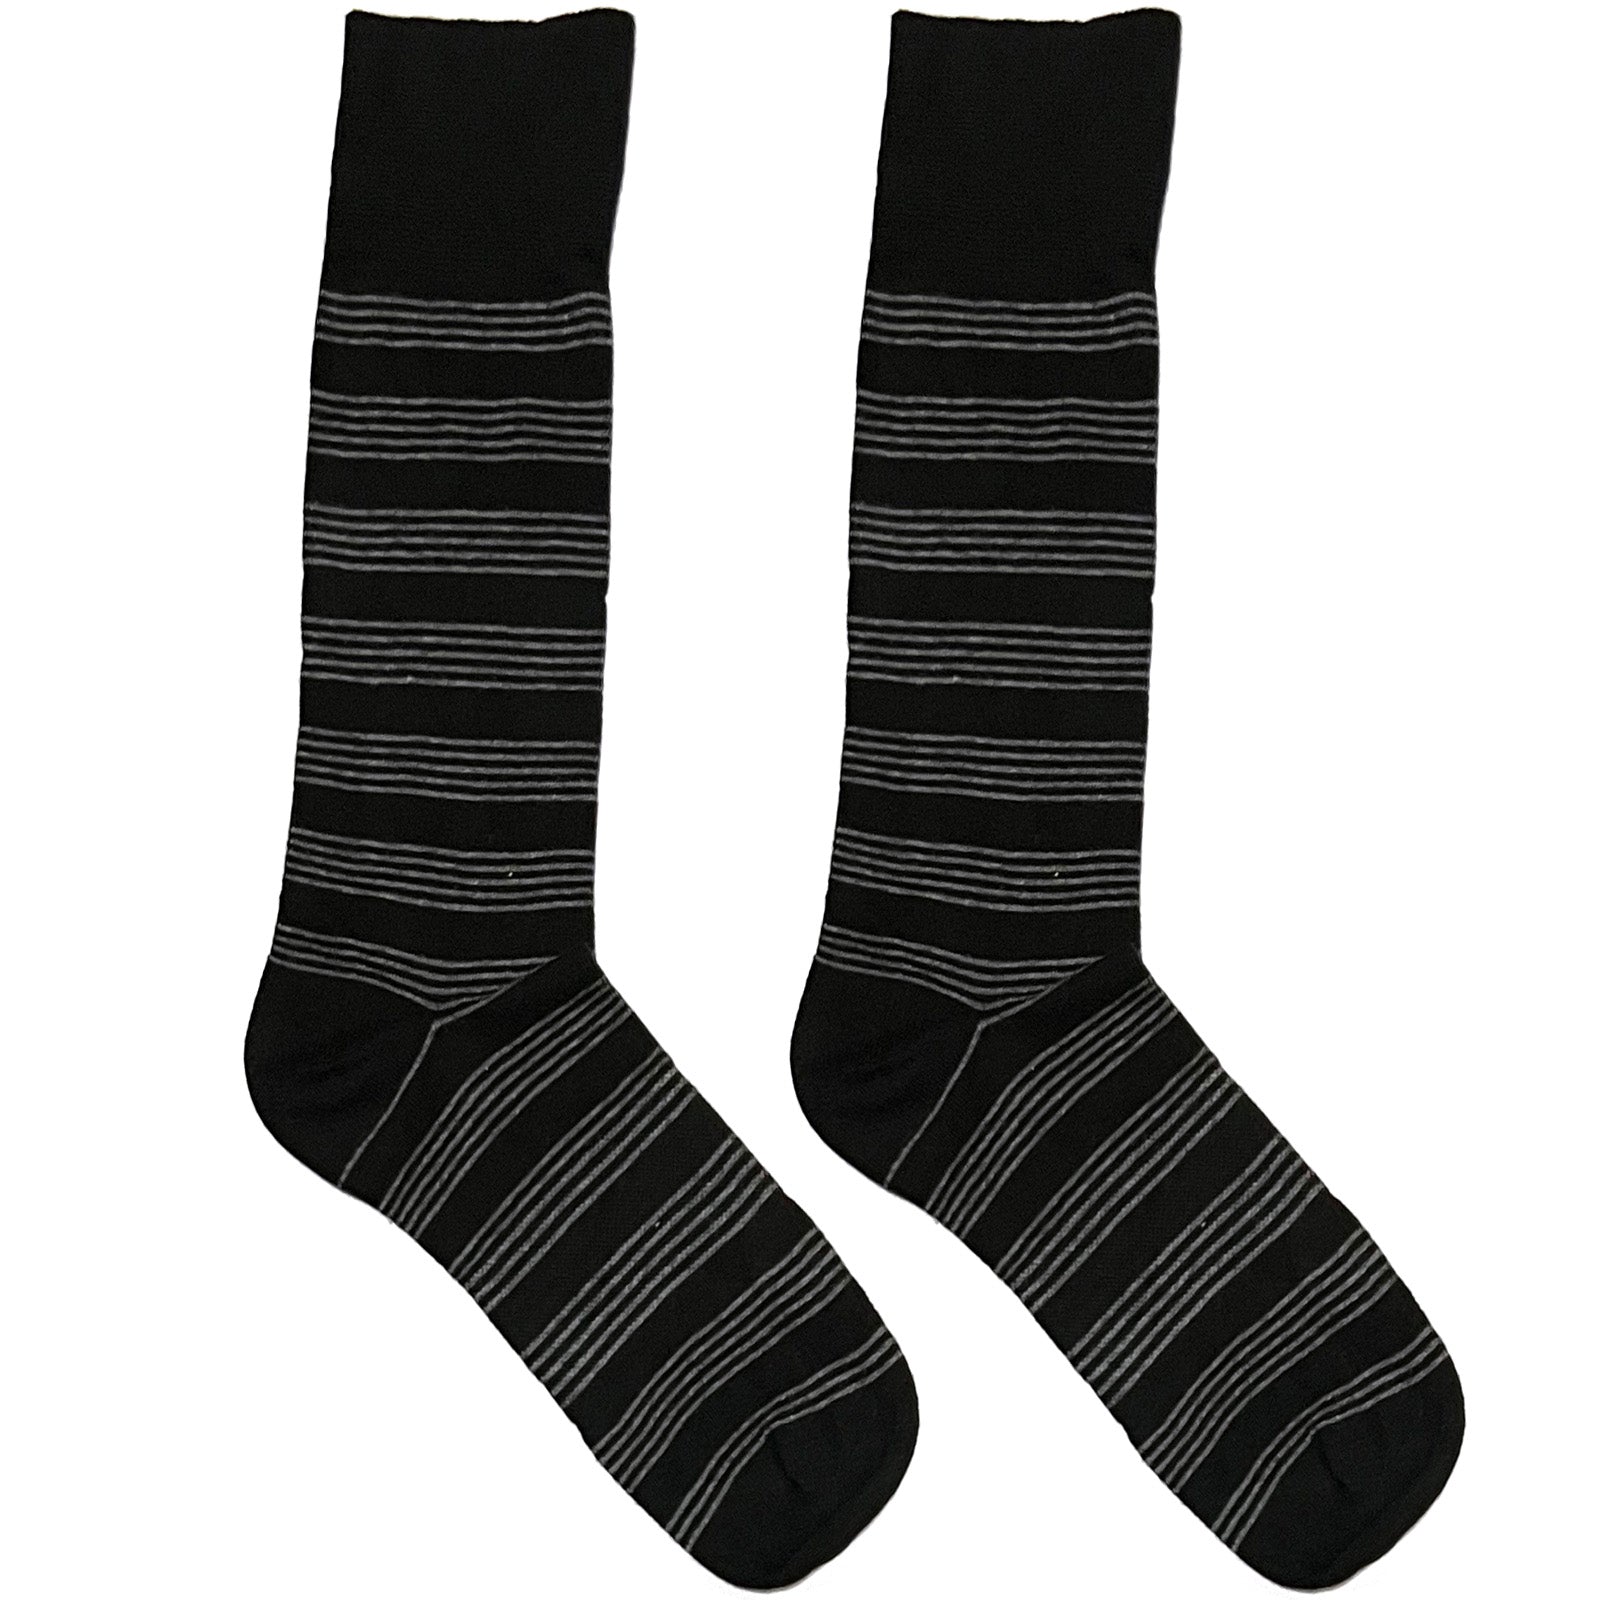 Black And White Stripes Socks